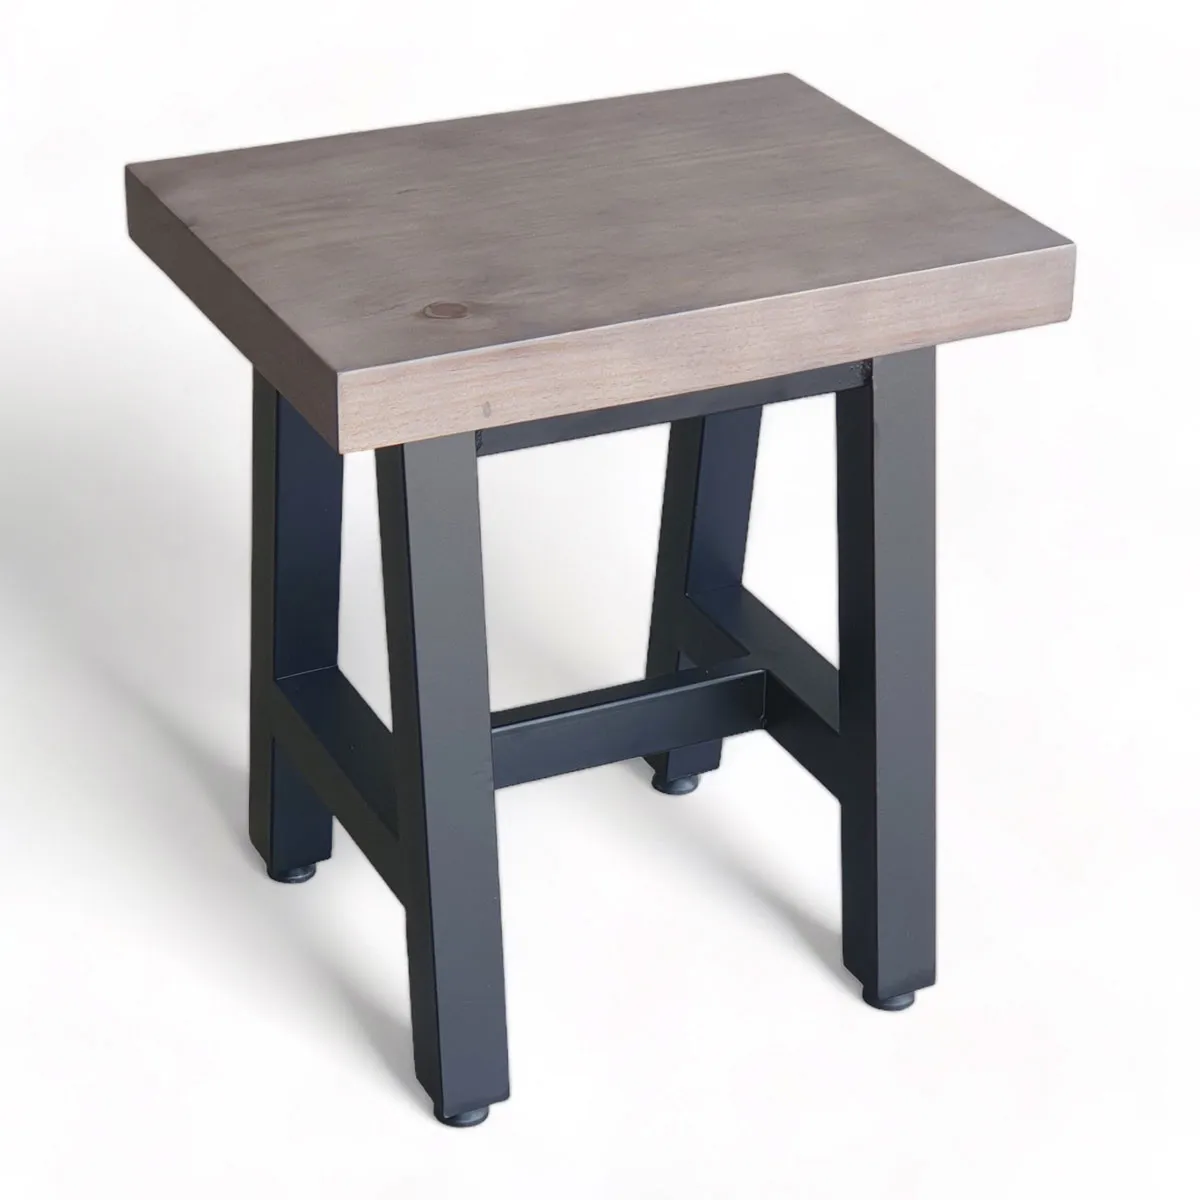 Ghế thắp hương bằng sắt mặt gỗ đơn giản mà đẹp